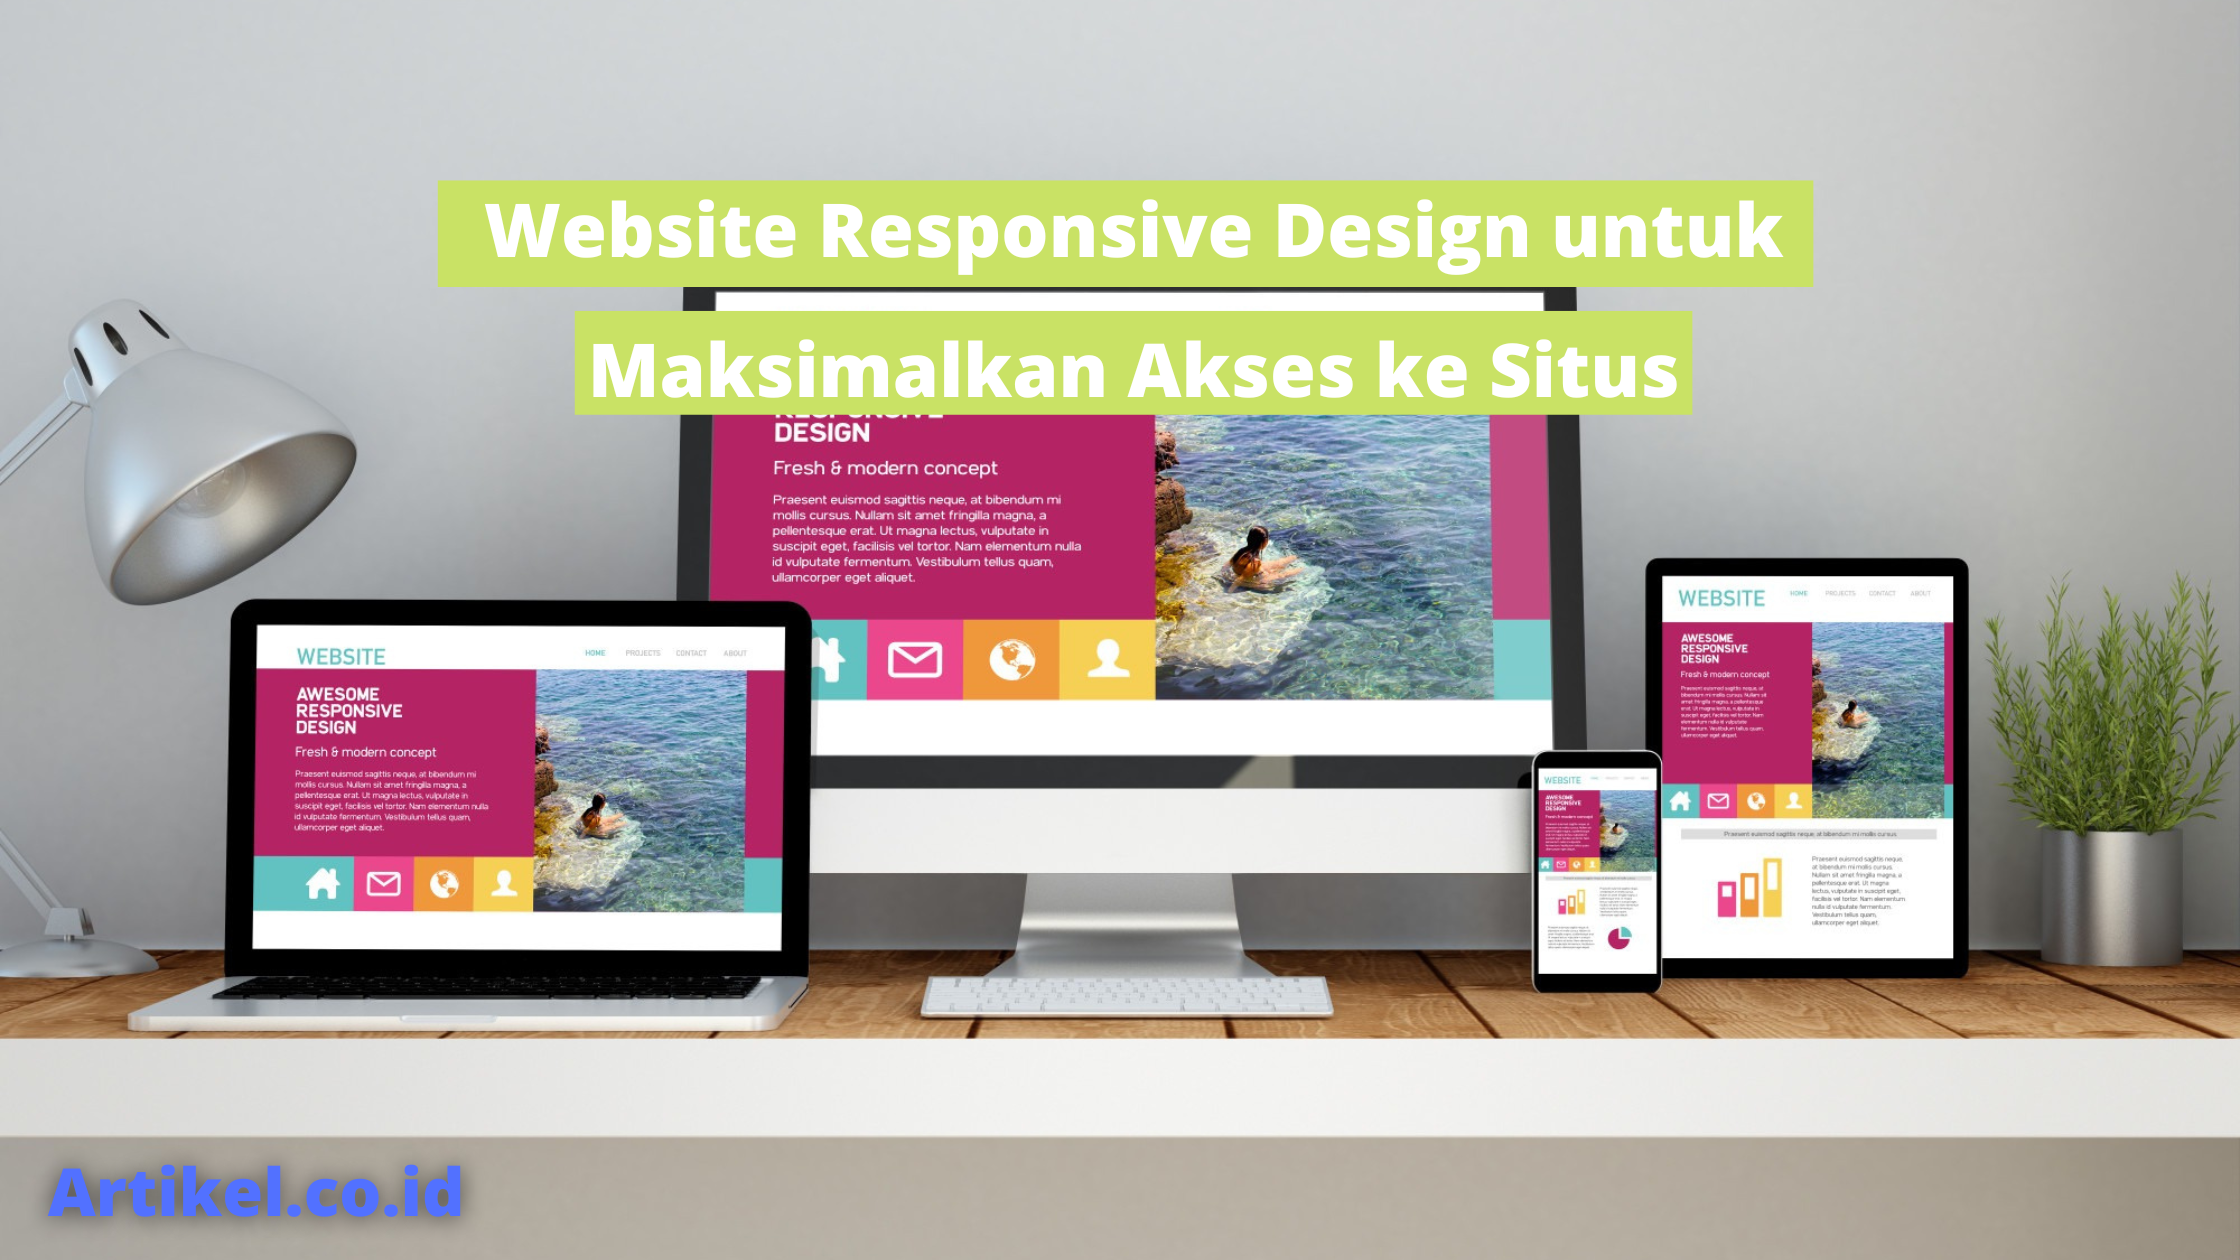 Website Responsive Design untuk Maksimalkan Akses ke Situs